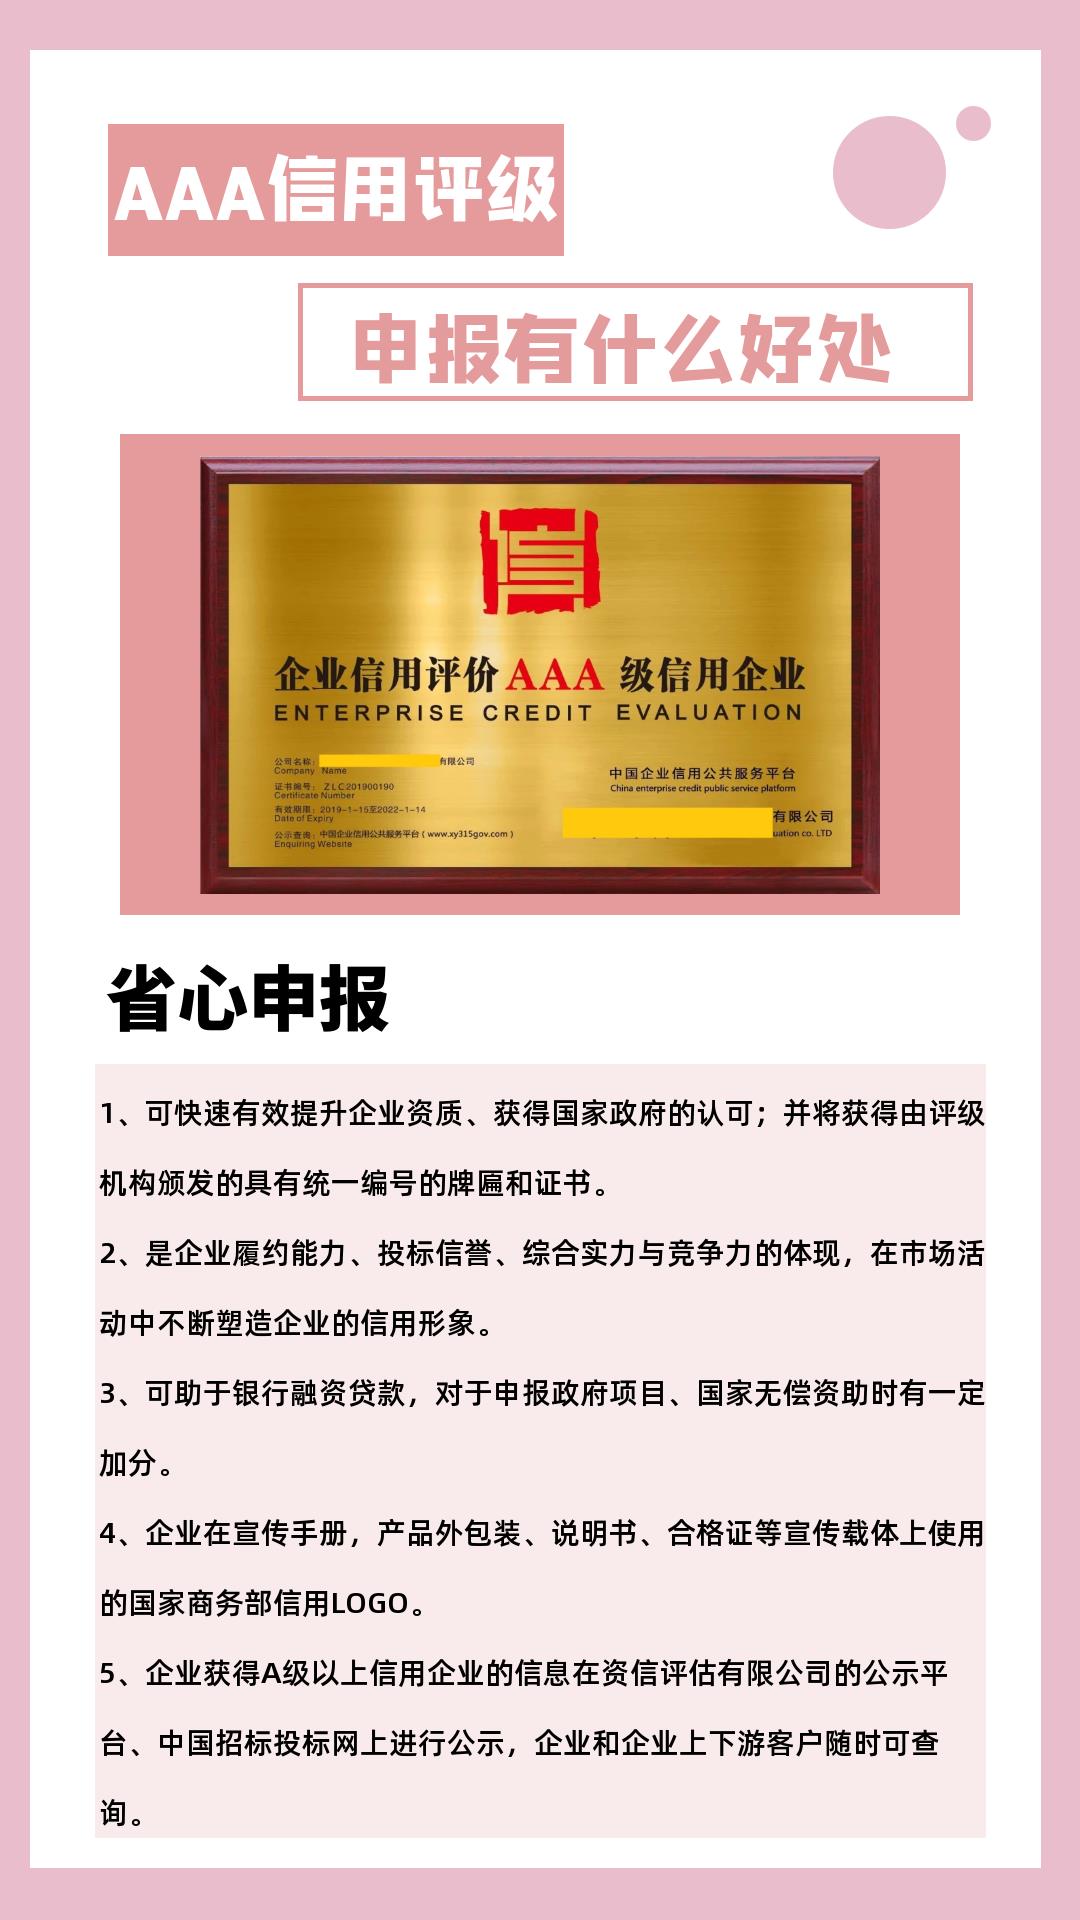 深圳餐饮企业现场管理认证